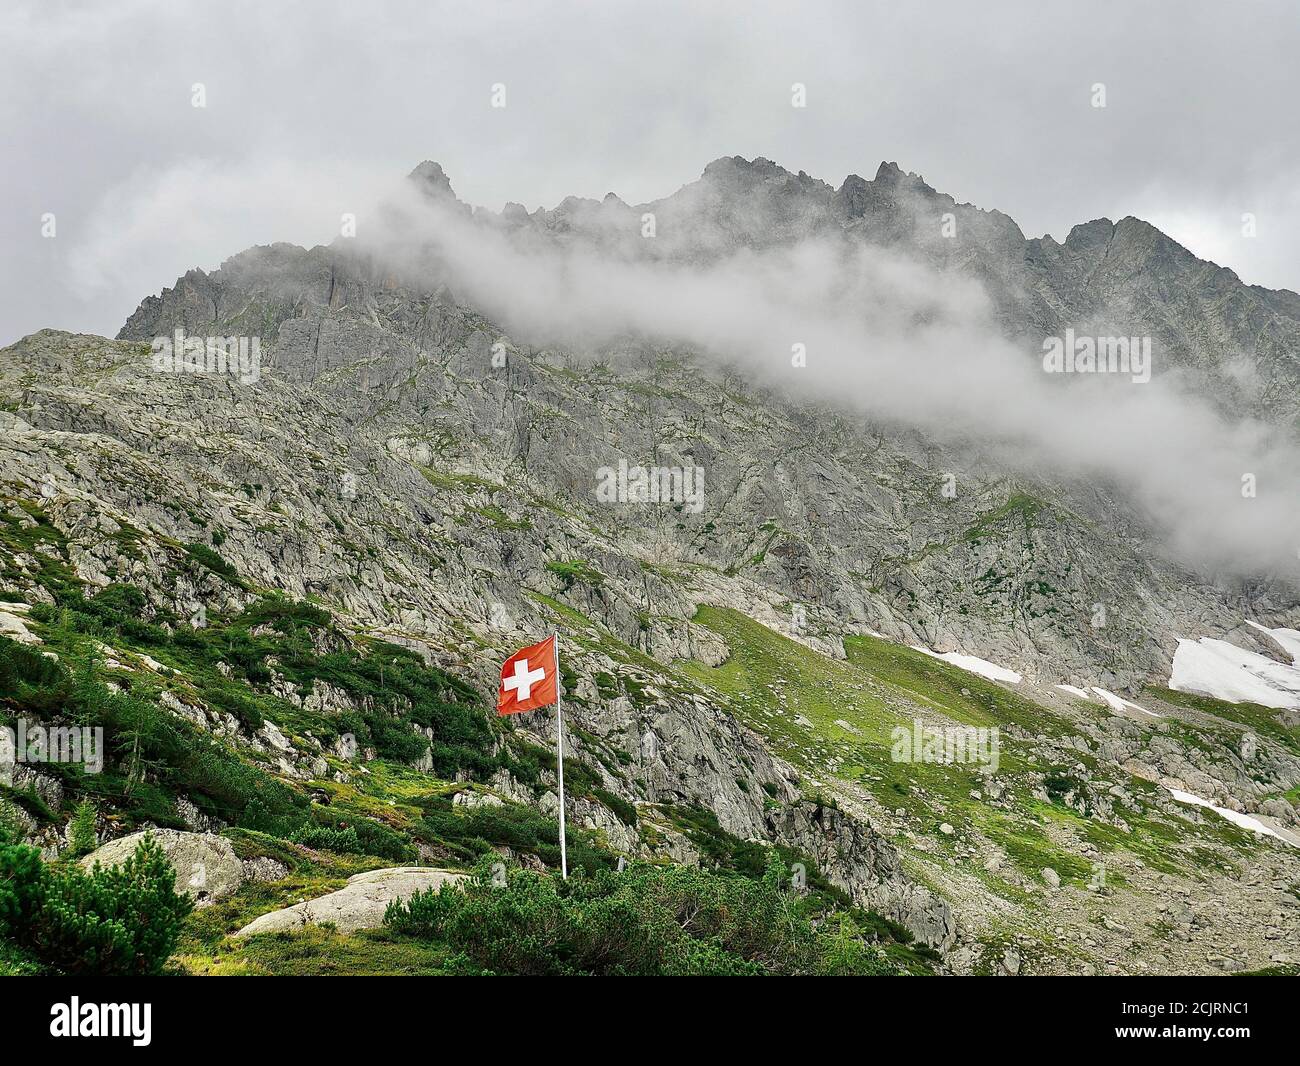 Schweizerflagge weht vor den wolkenbehangenen Alpen. Schöne Komposition aus Bergen, Wolken und der Schweizer Flagge. Stock Photo